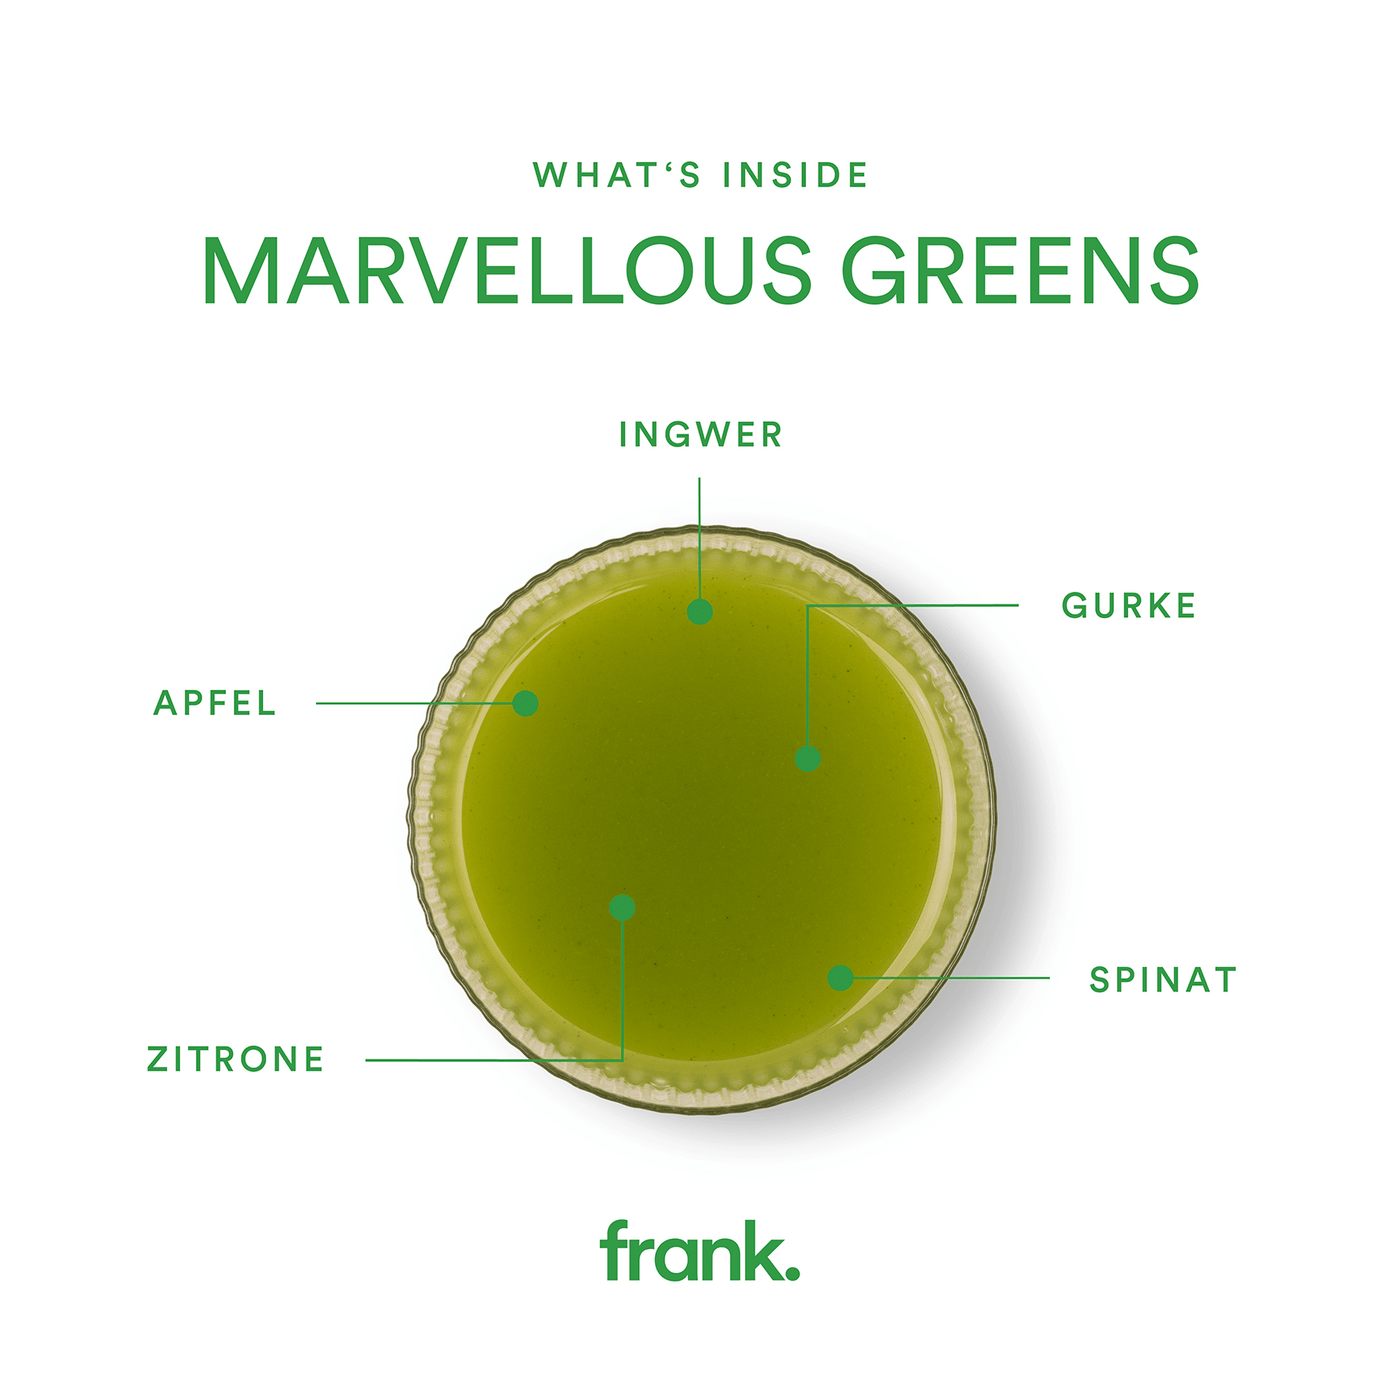 Darstellung des Saft Marvellous Greens mit Apfel, Gurke, Spinat, Ingwer und Zitrone in einem Glas von frank